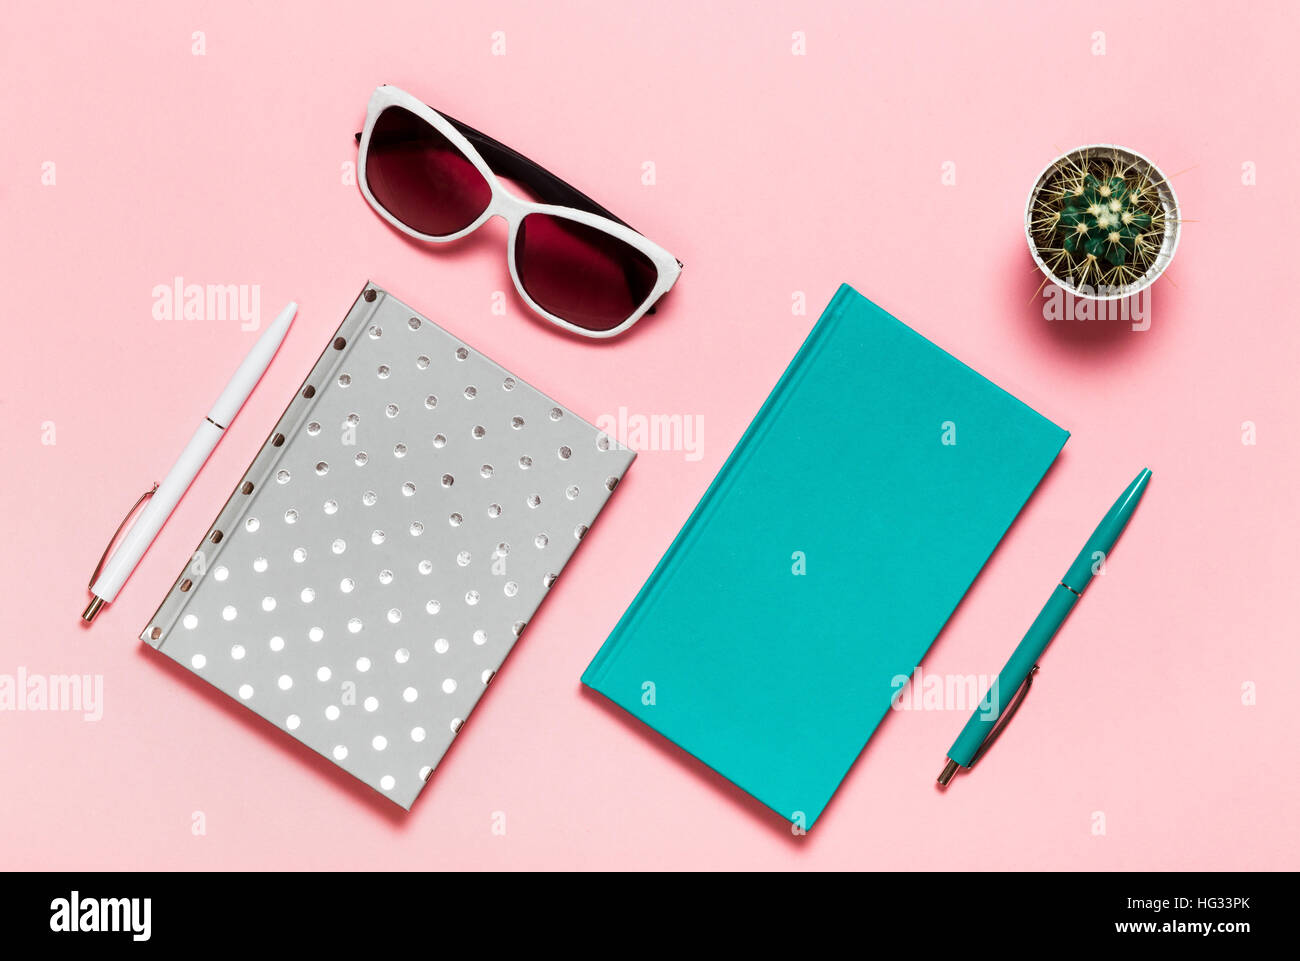 Mise à plat de l'espace de bureau avec photo portable aquamarine, lunettes, copie espace cactus sur fond rose, style minimal Banque D'Images